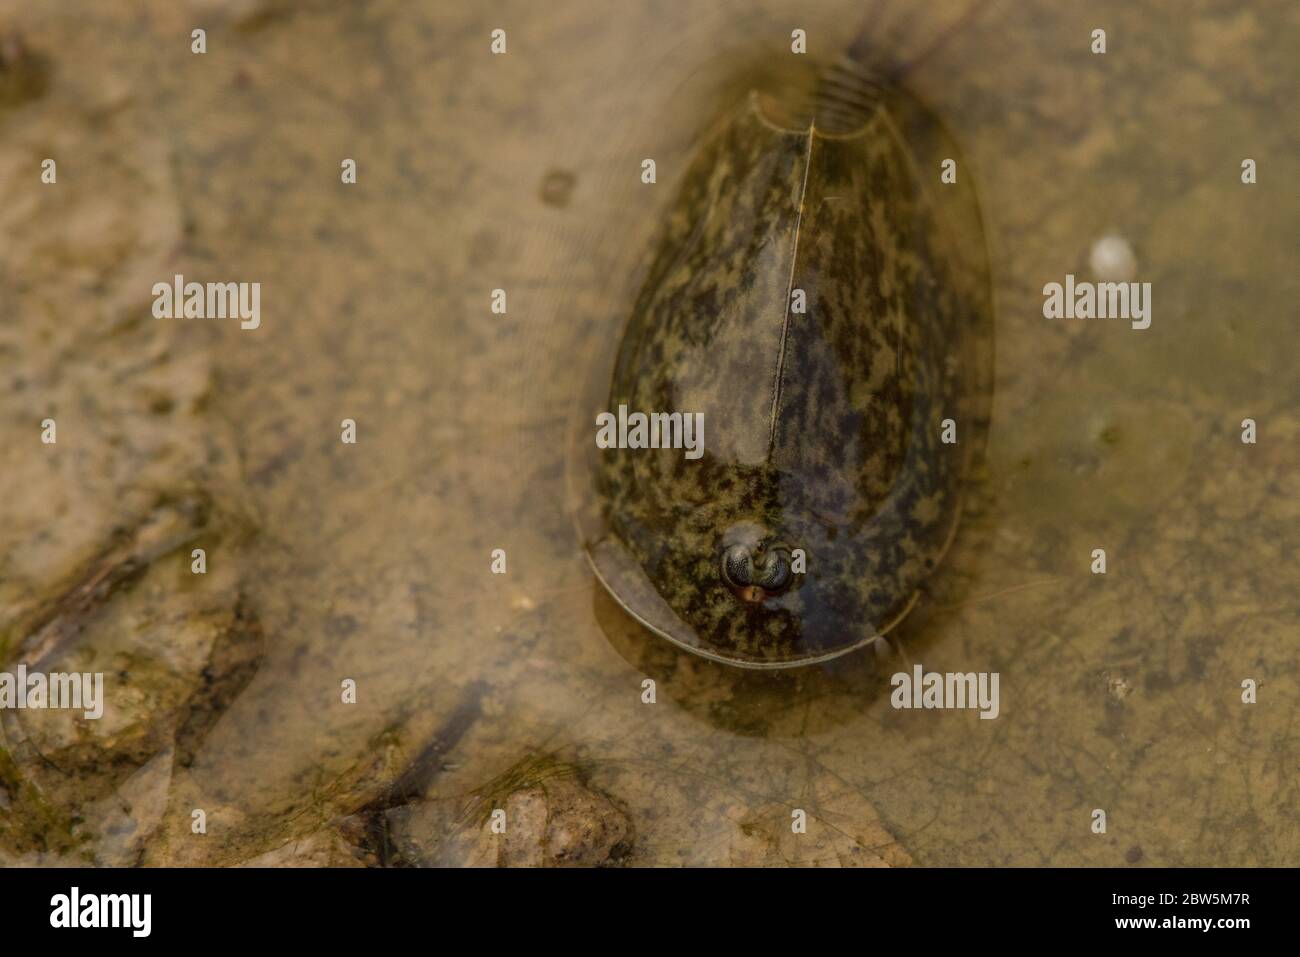 Gamberetti di tadpole di vernal pool (Lepidurus packardi) specie minacciata di gamberetti di protezione endemici della valle centrale della California. Foto Stock